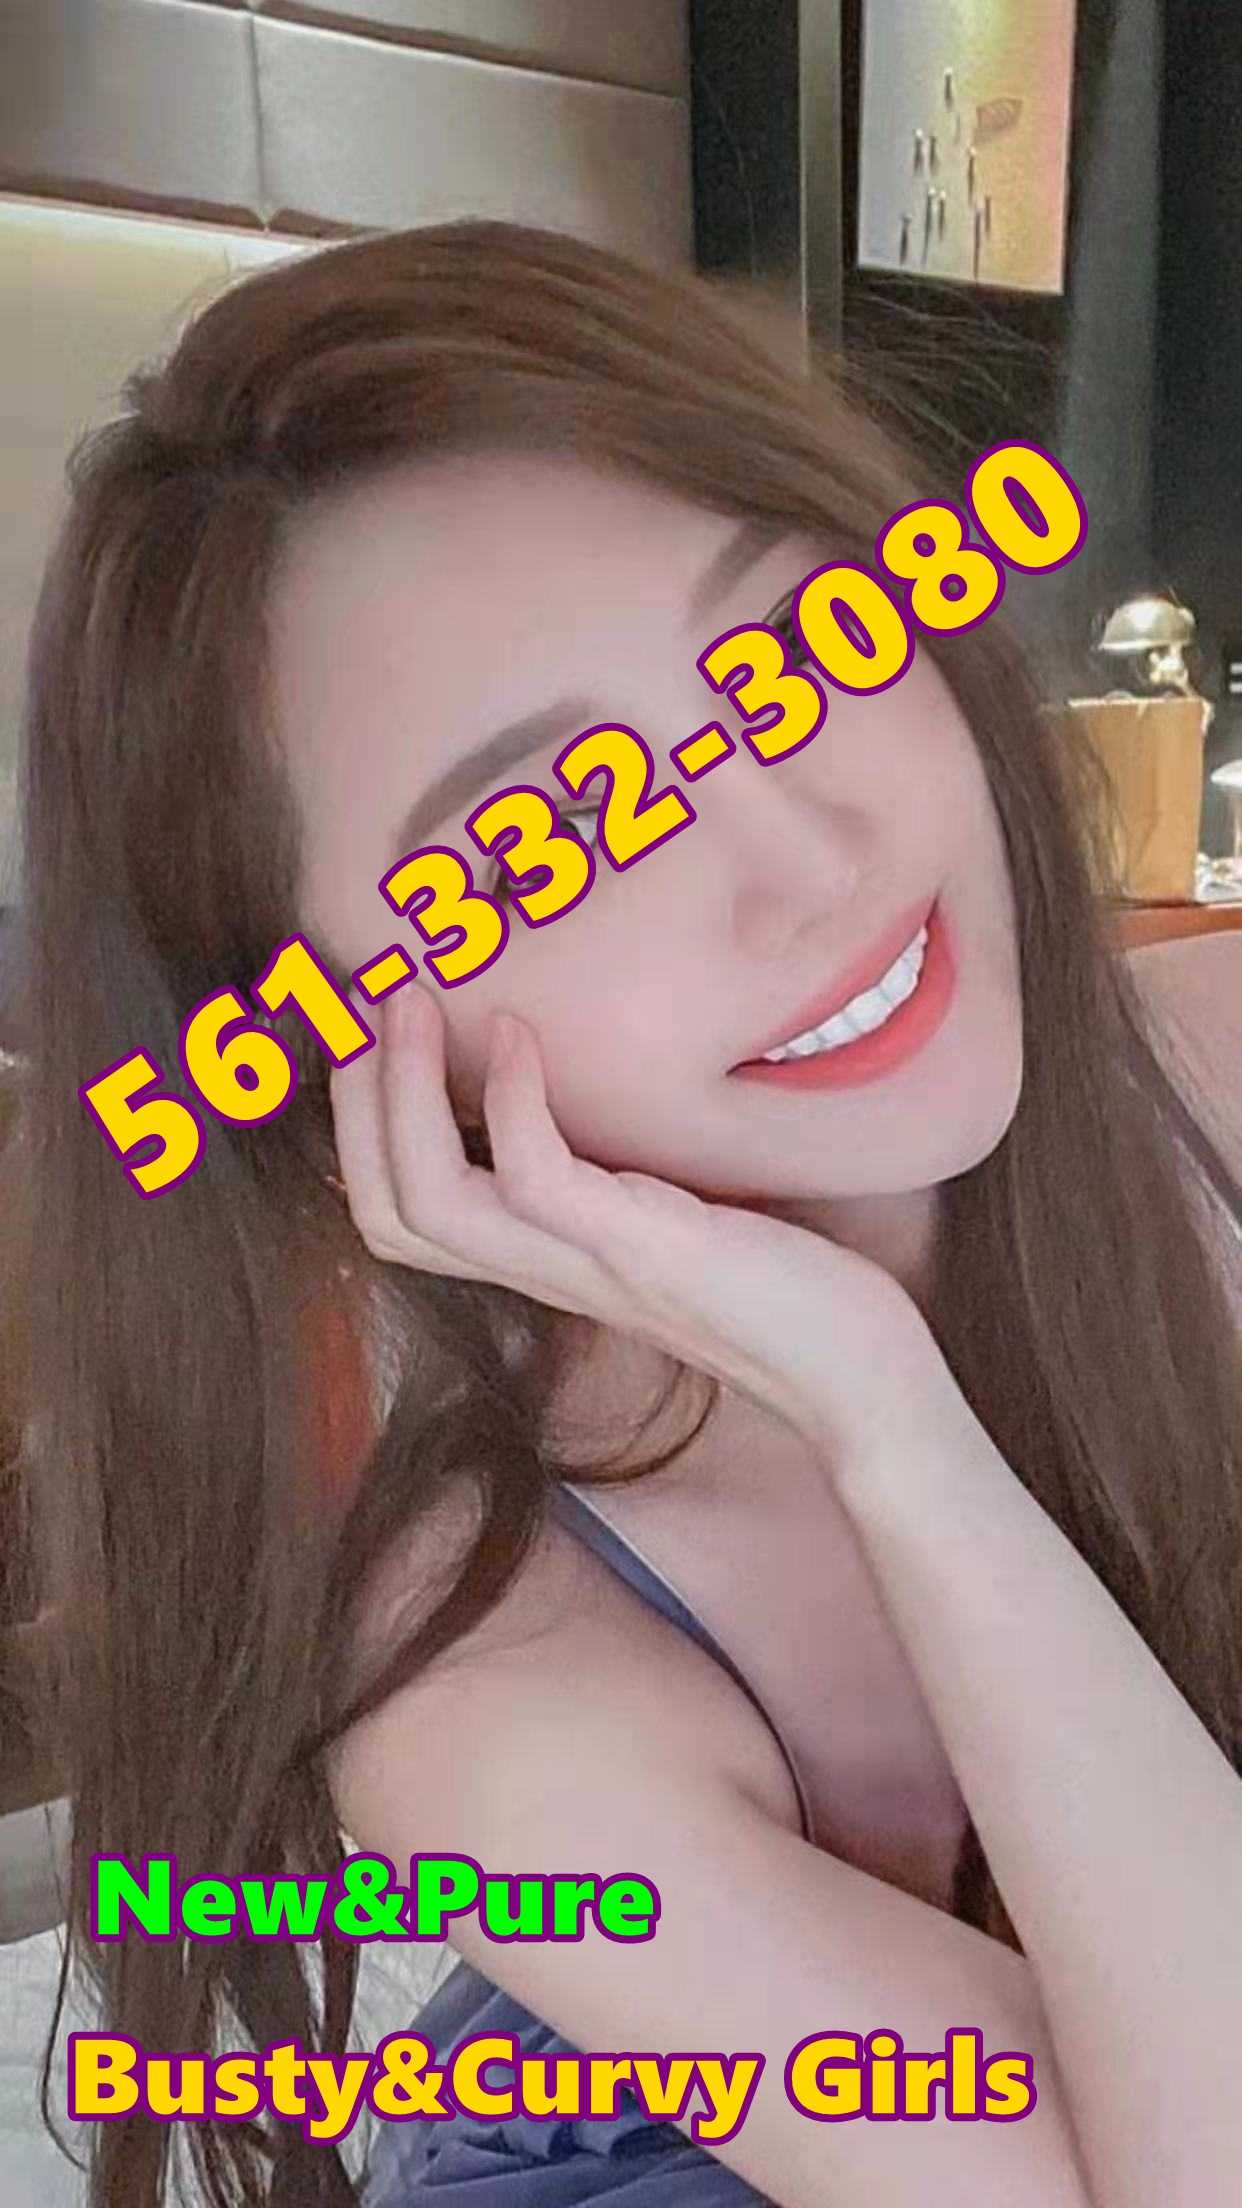  5613323080